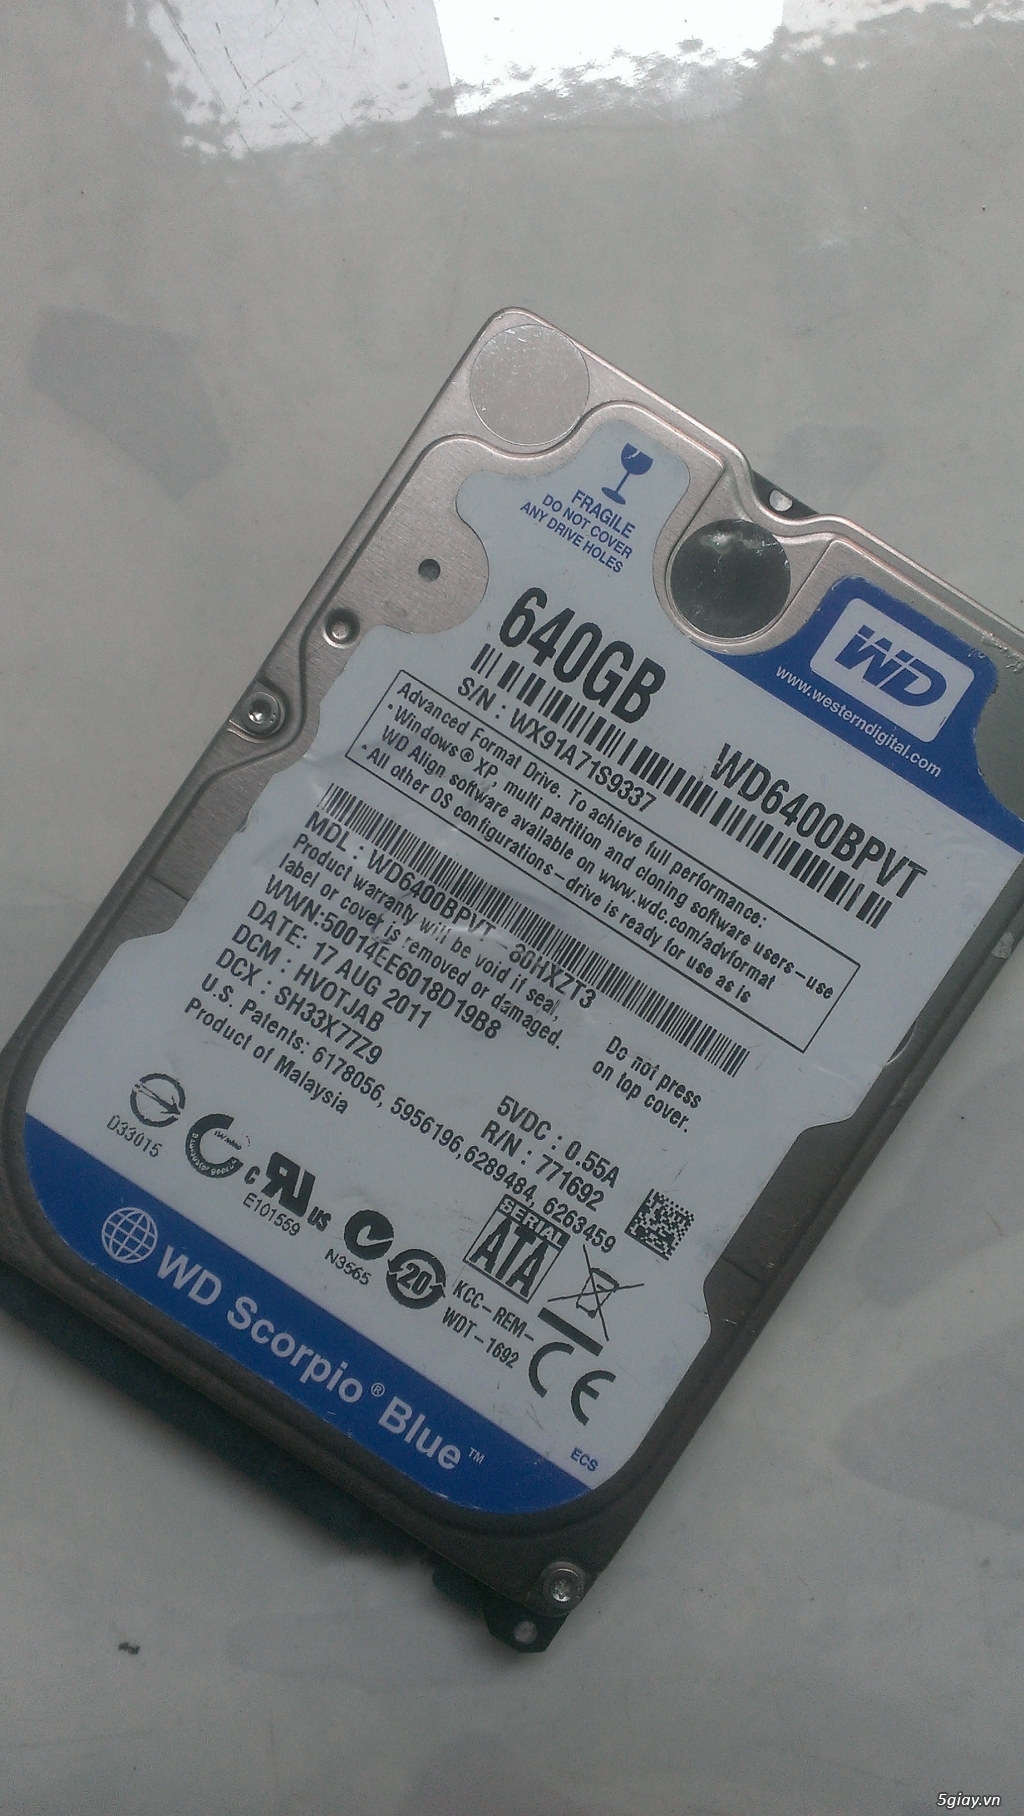 SSD xách tay , ổ cứng sata 3 , ổ cứng 7200v ...cho laptop - 16